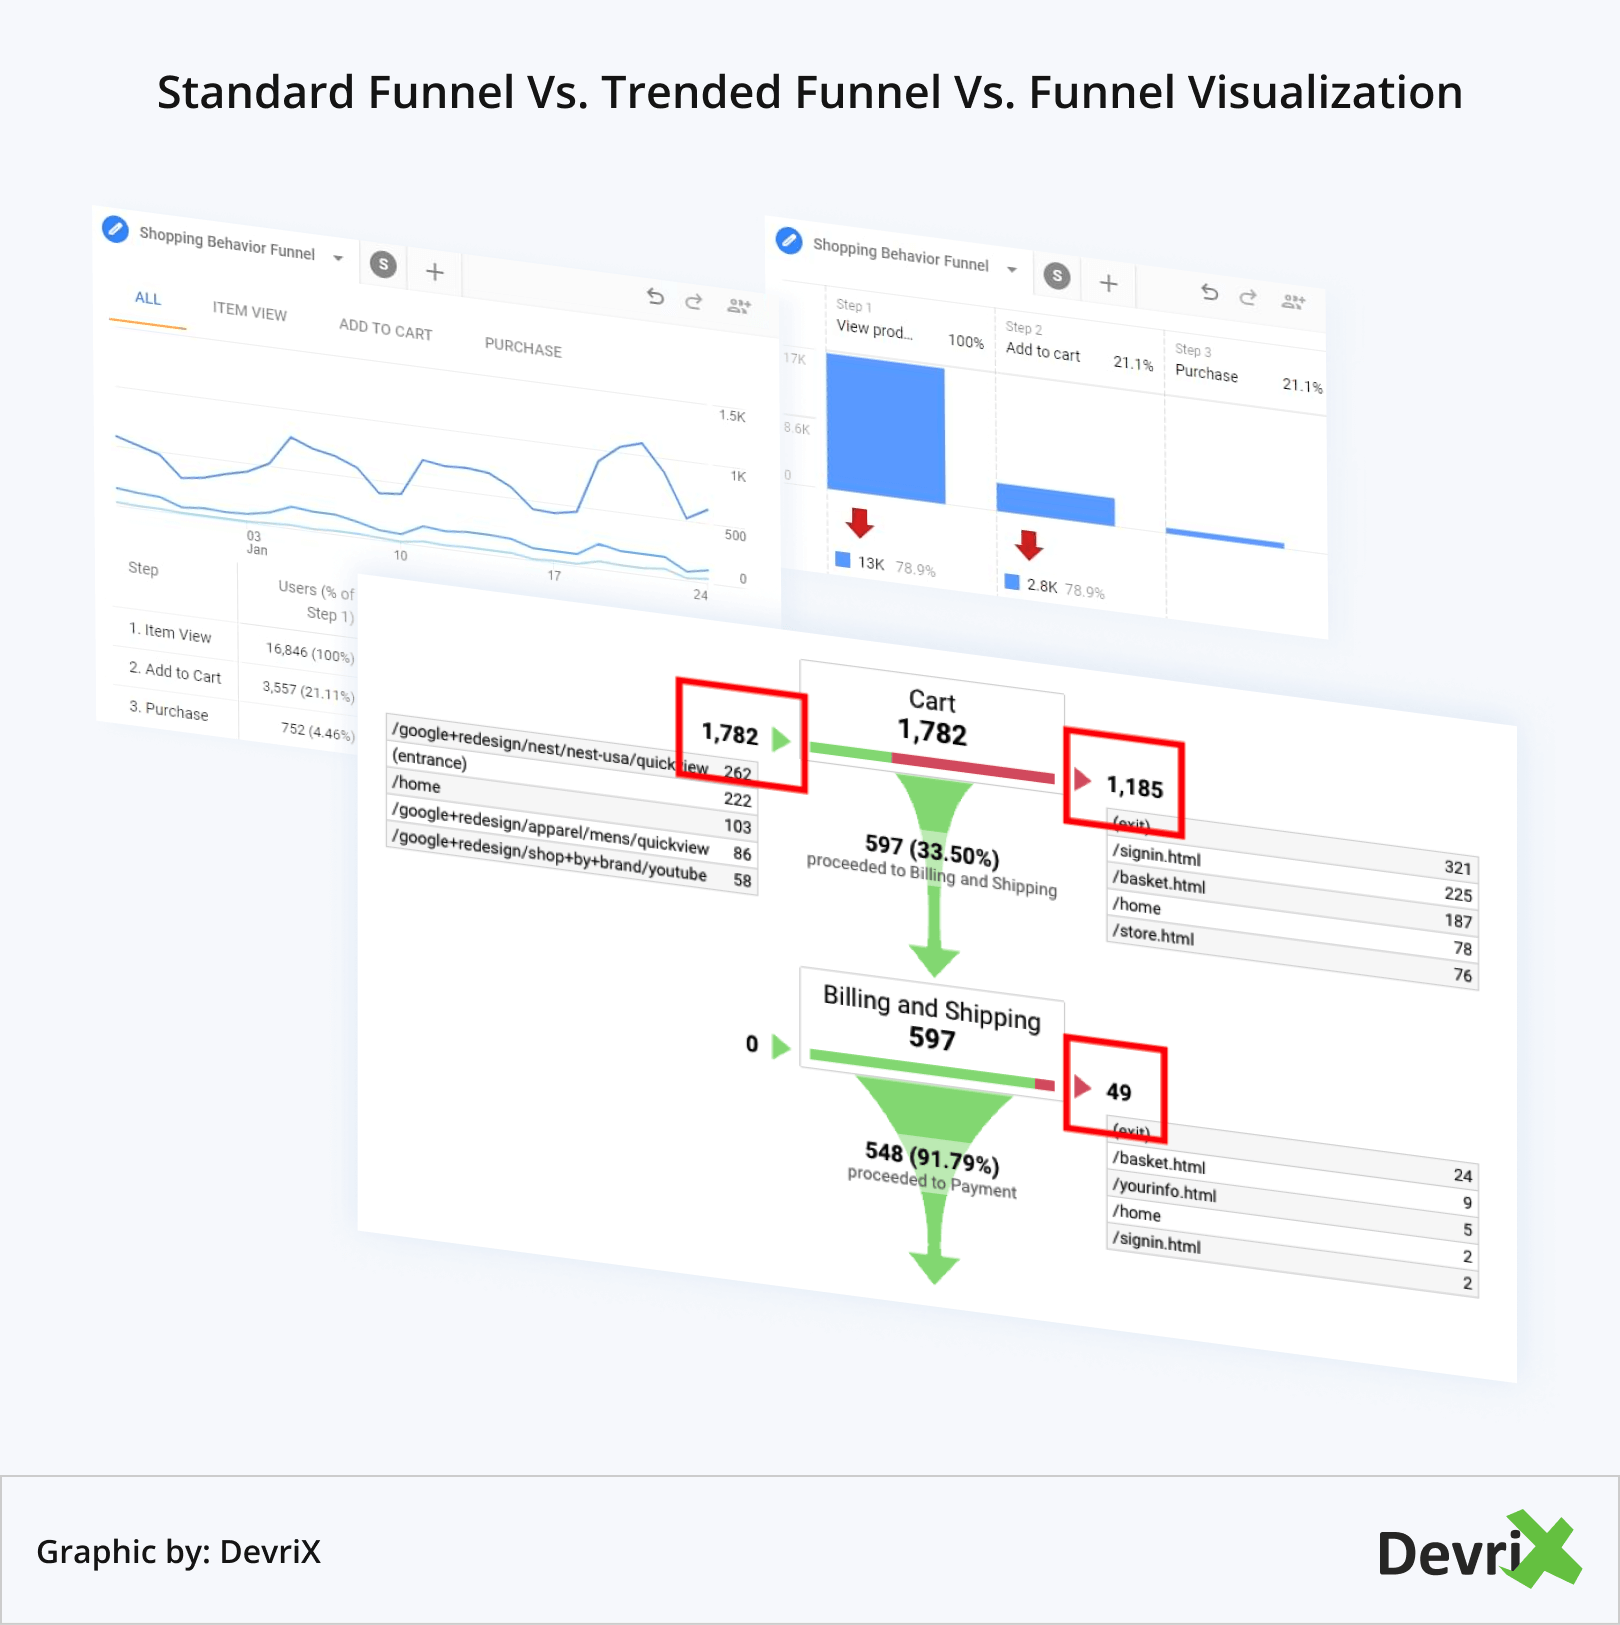 Standard Funnel Vs. Trended Funnel Vs. Funnel Visualization